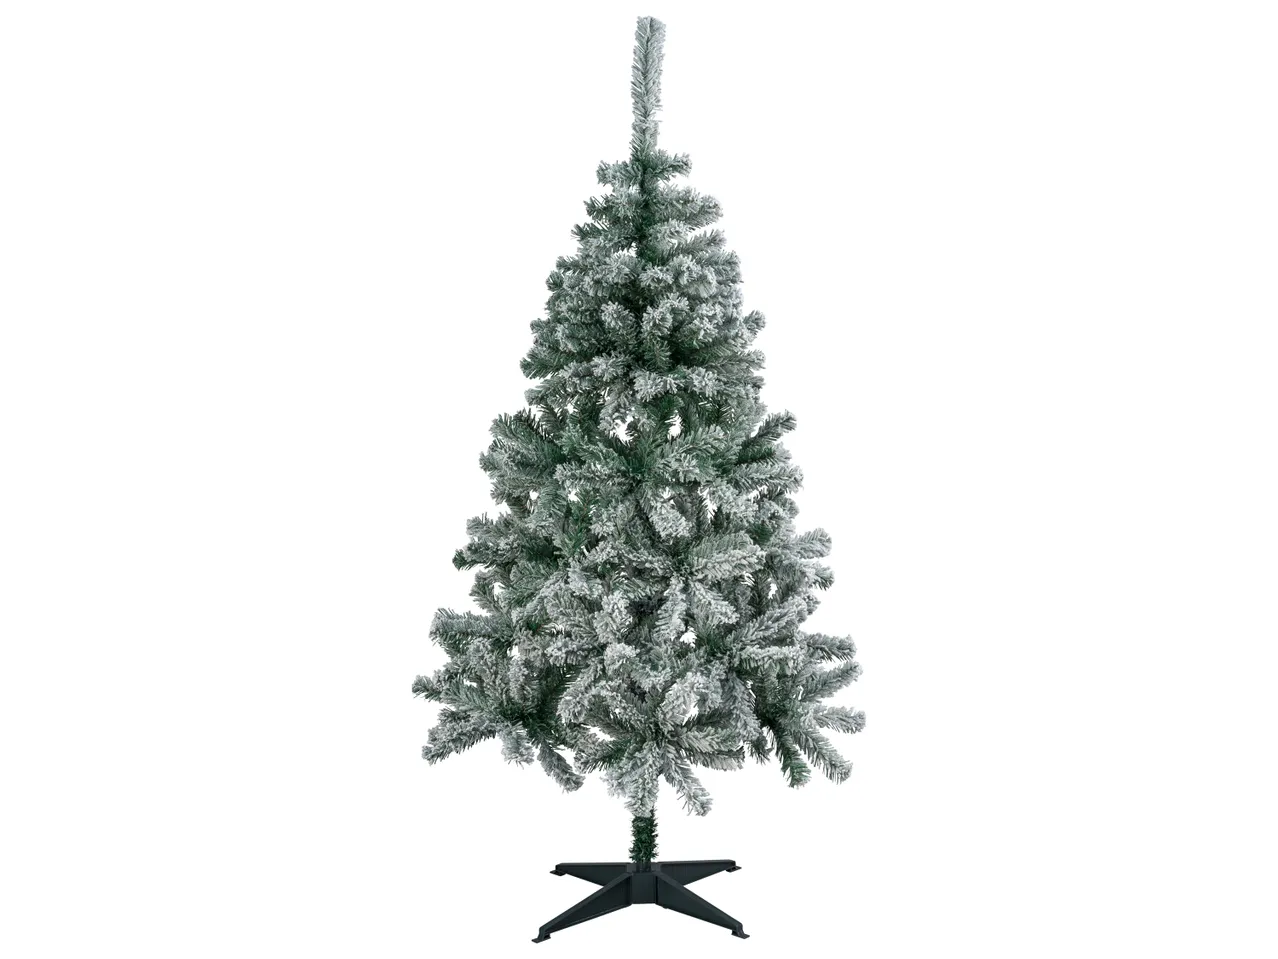 Albero di Natale , prezzo 19.99 EUR 
Albero di Natale 150 cm 
- Diametro: 75 cm
- ...